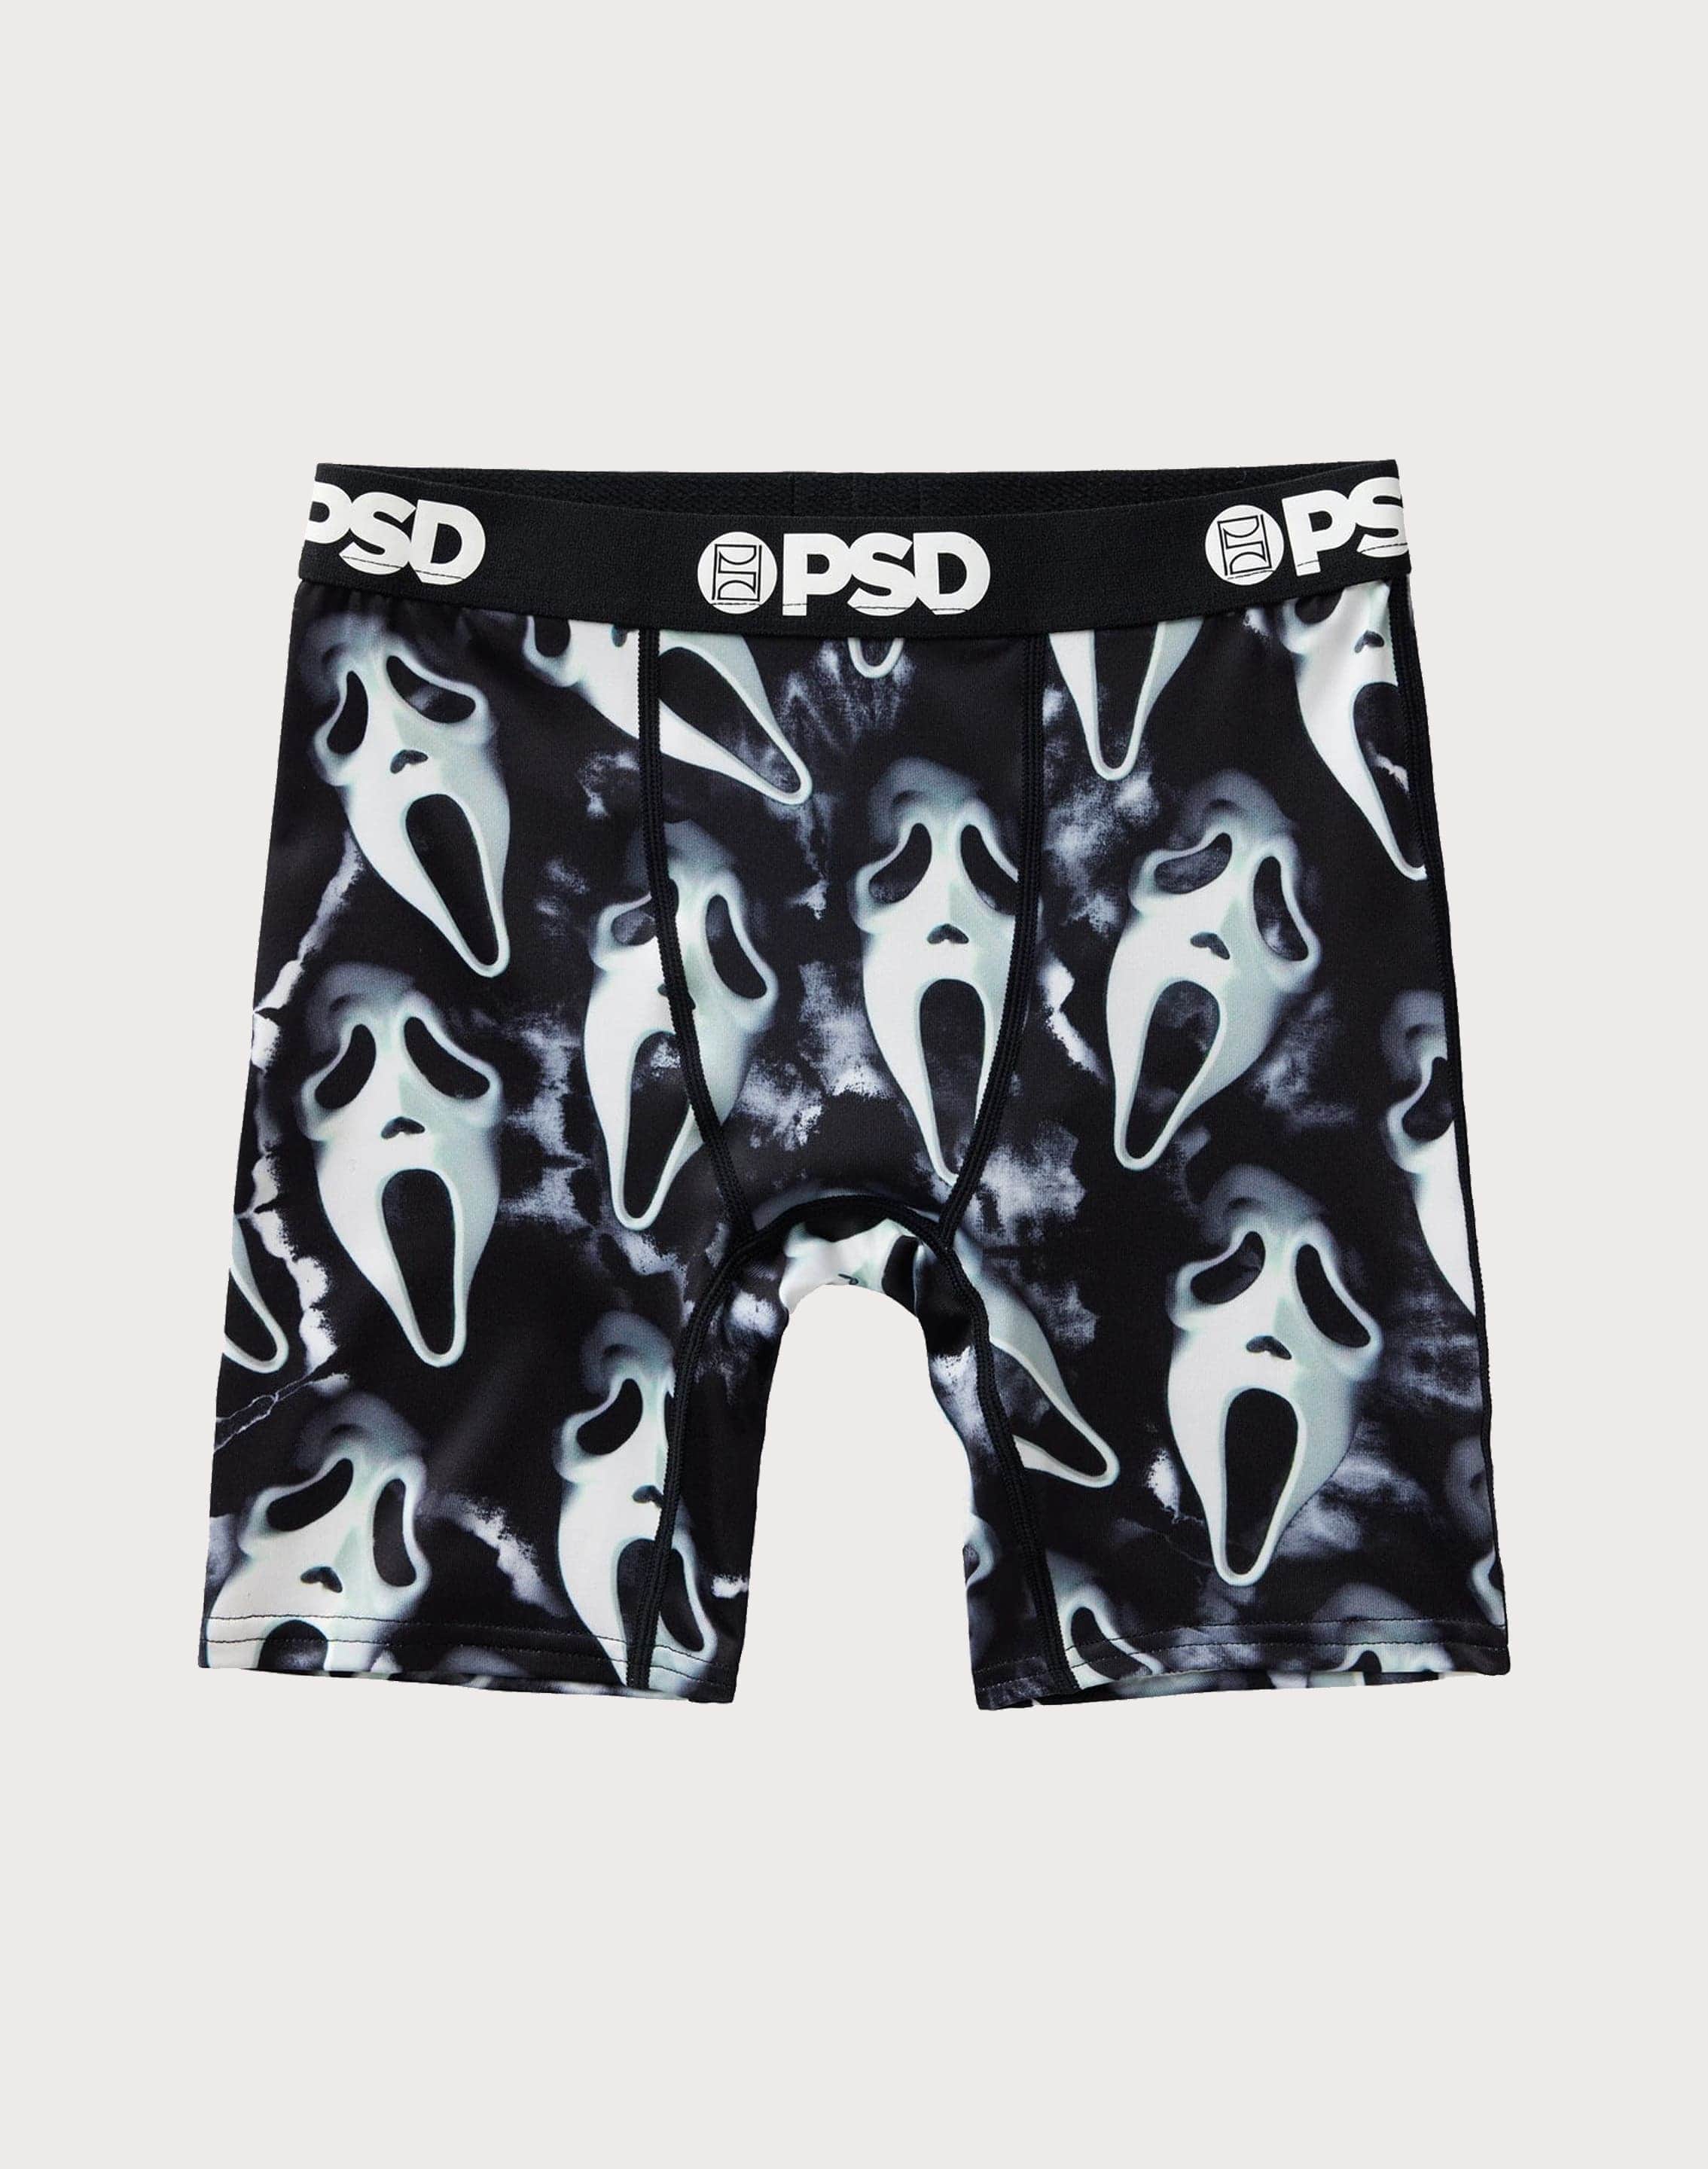 PSD Underwear – DTLR